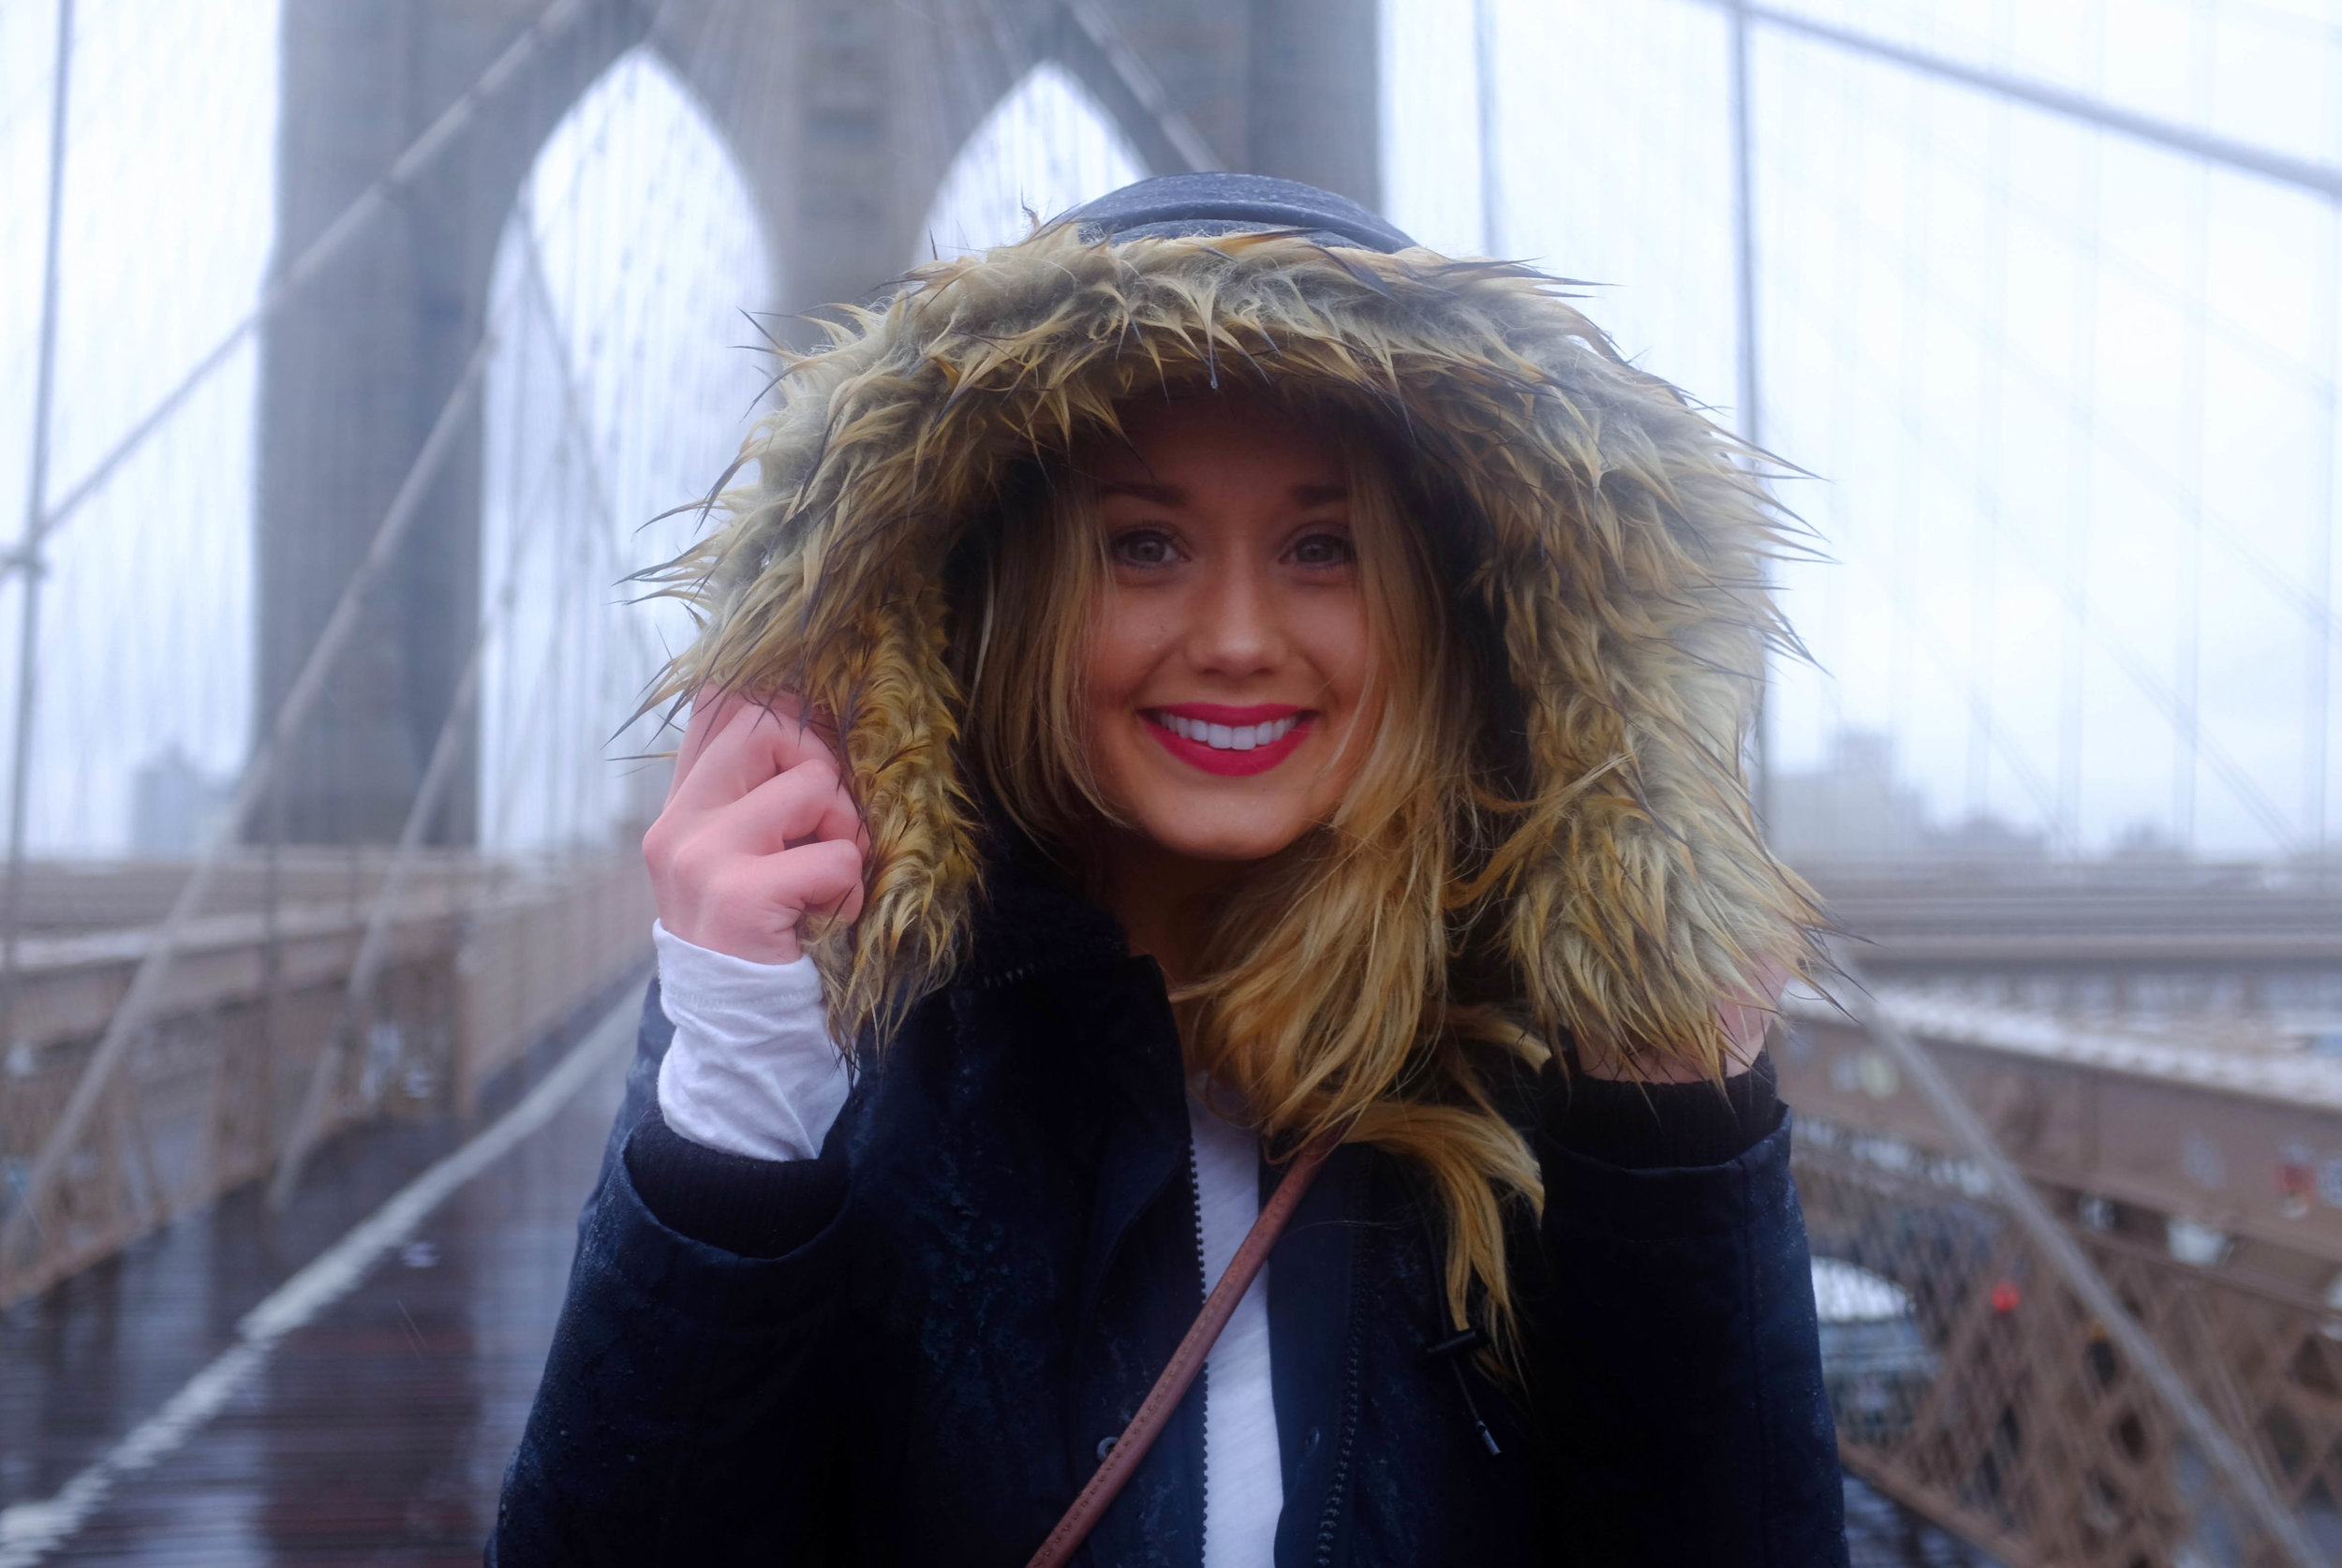 Kaci Nicole - Smile on Brooklyn Bridge.jpg